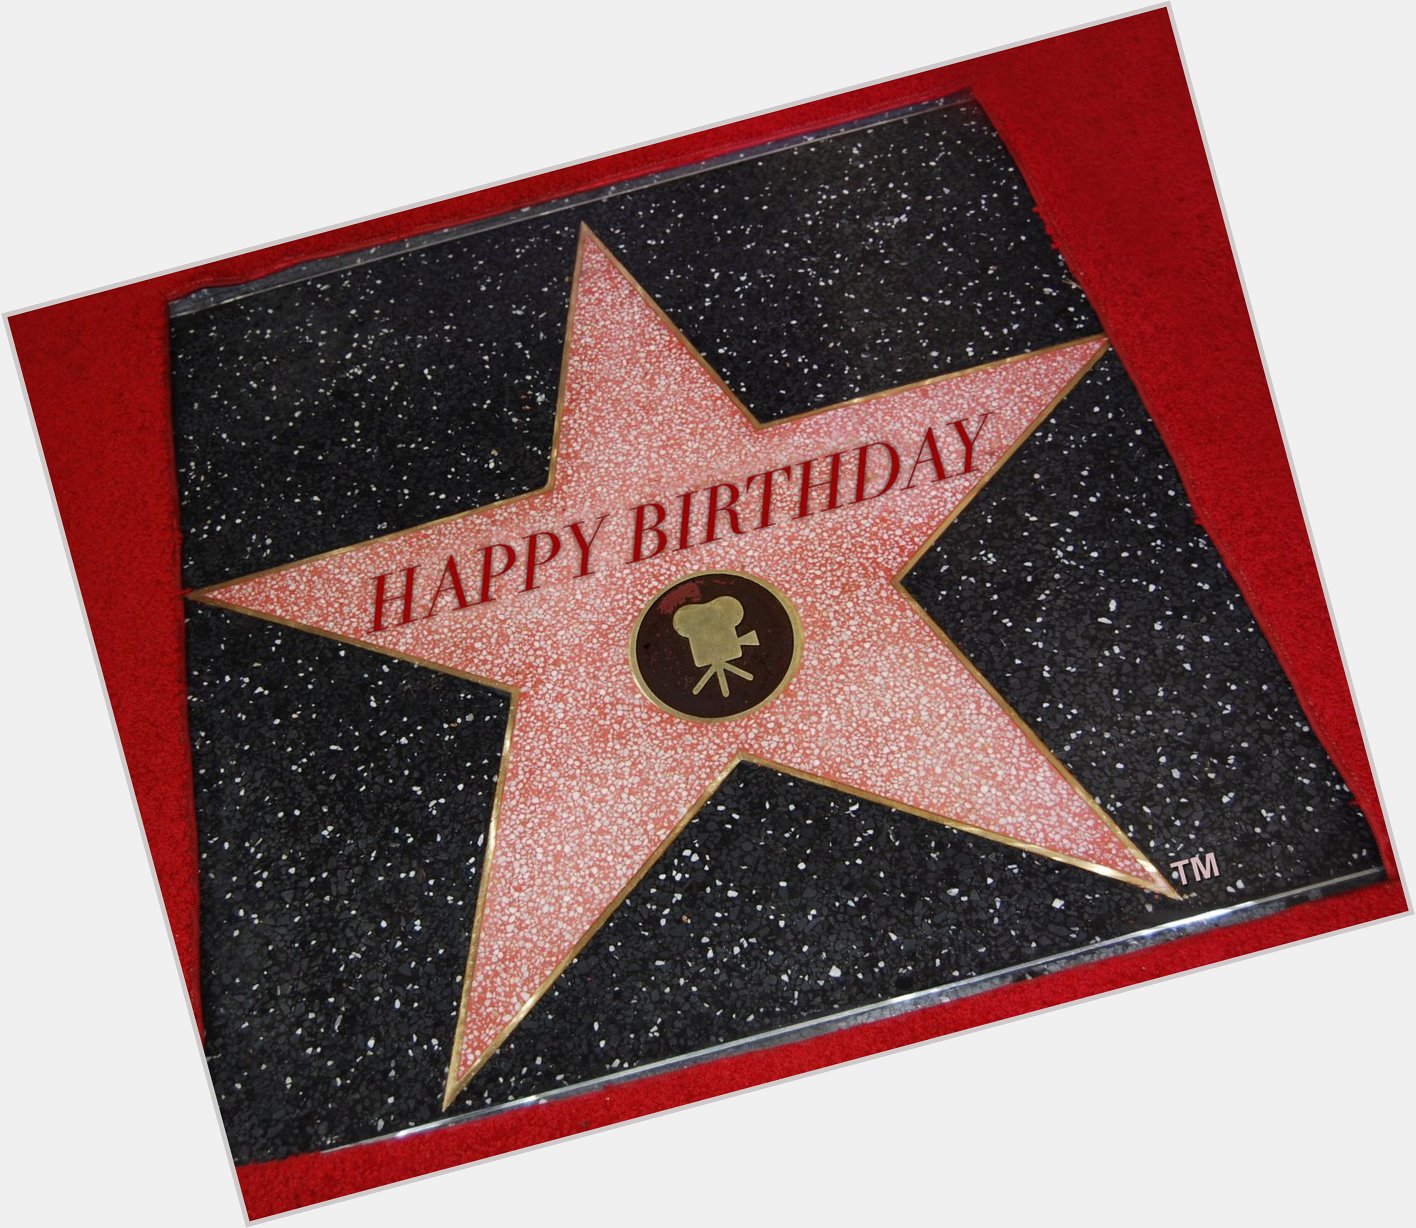 Happy Birthday to Walk of Famer John Stamos! 